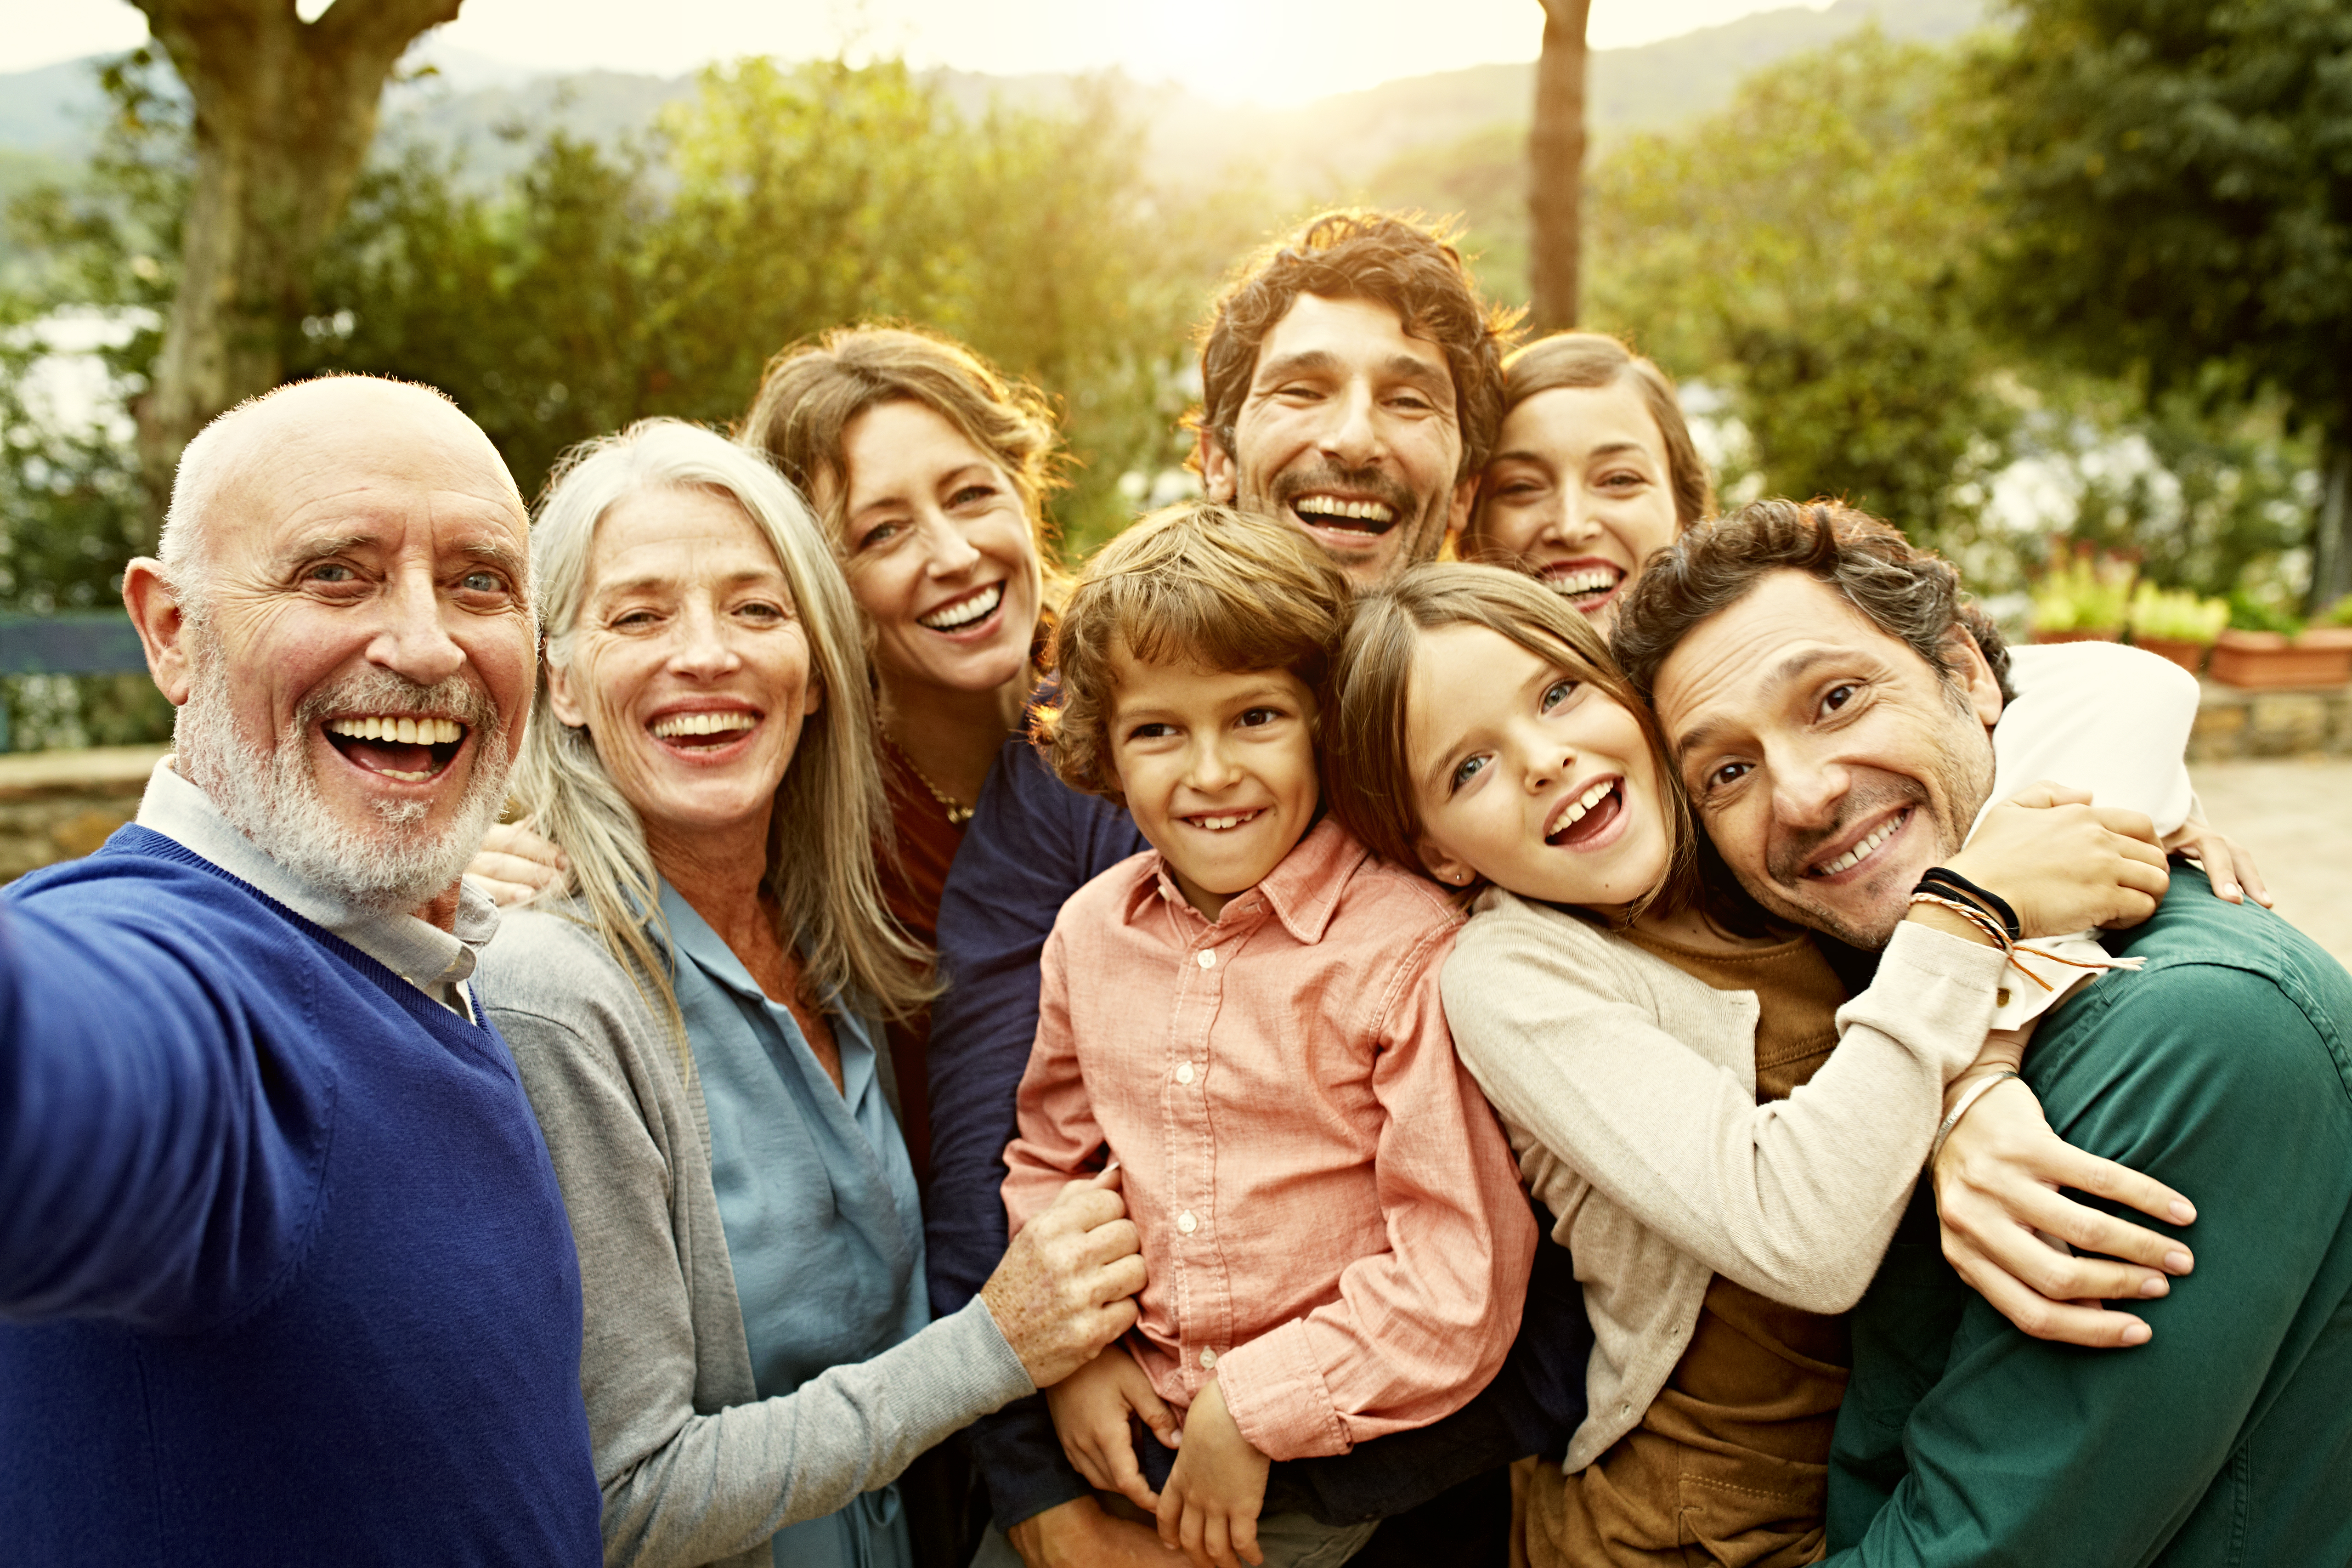 Un portrait de famille heureux | Source : Getty Images